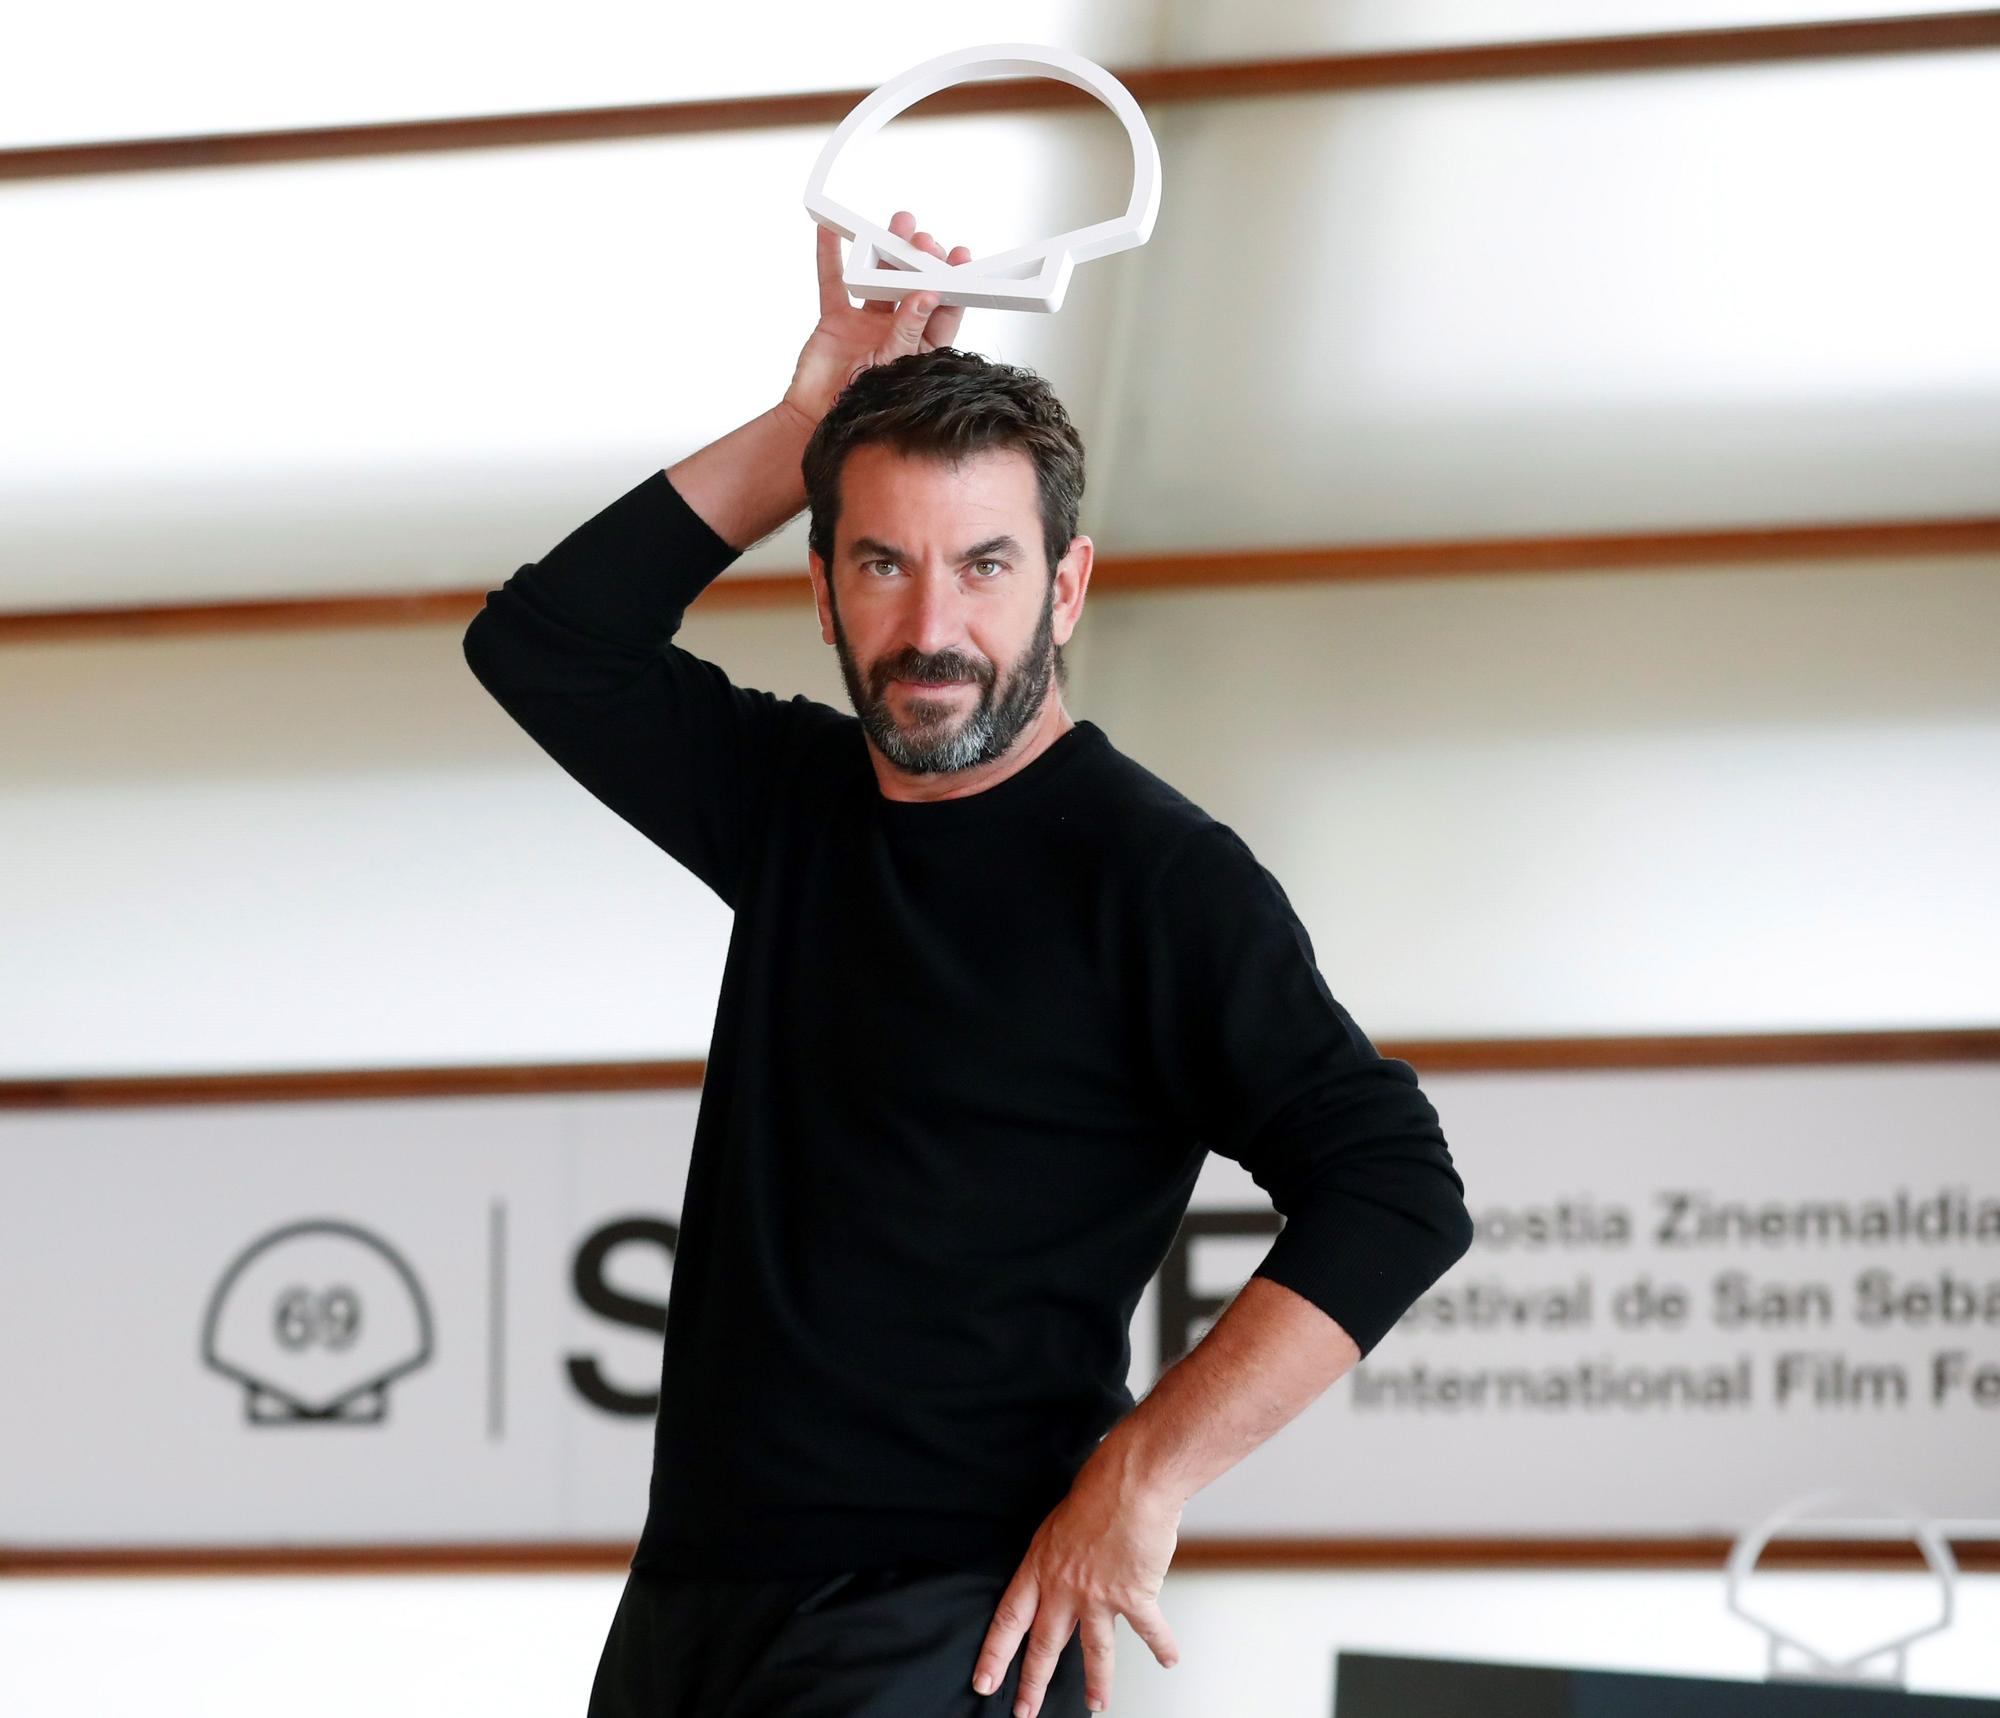 El actor Arturo Valls posa durante la presentación de las nuevas series de HBO Max dentro de la 69 Edición del Festival Internacional de Cine de San Sebastián, el pasado mes de septiembre.